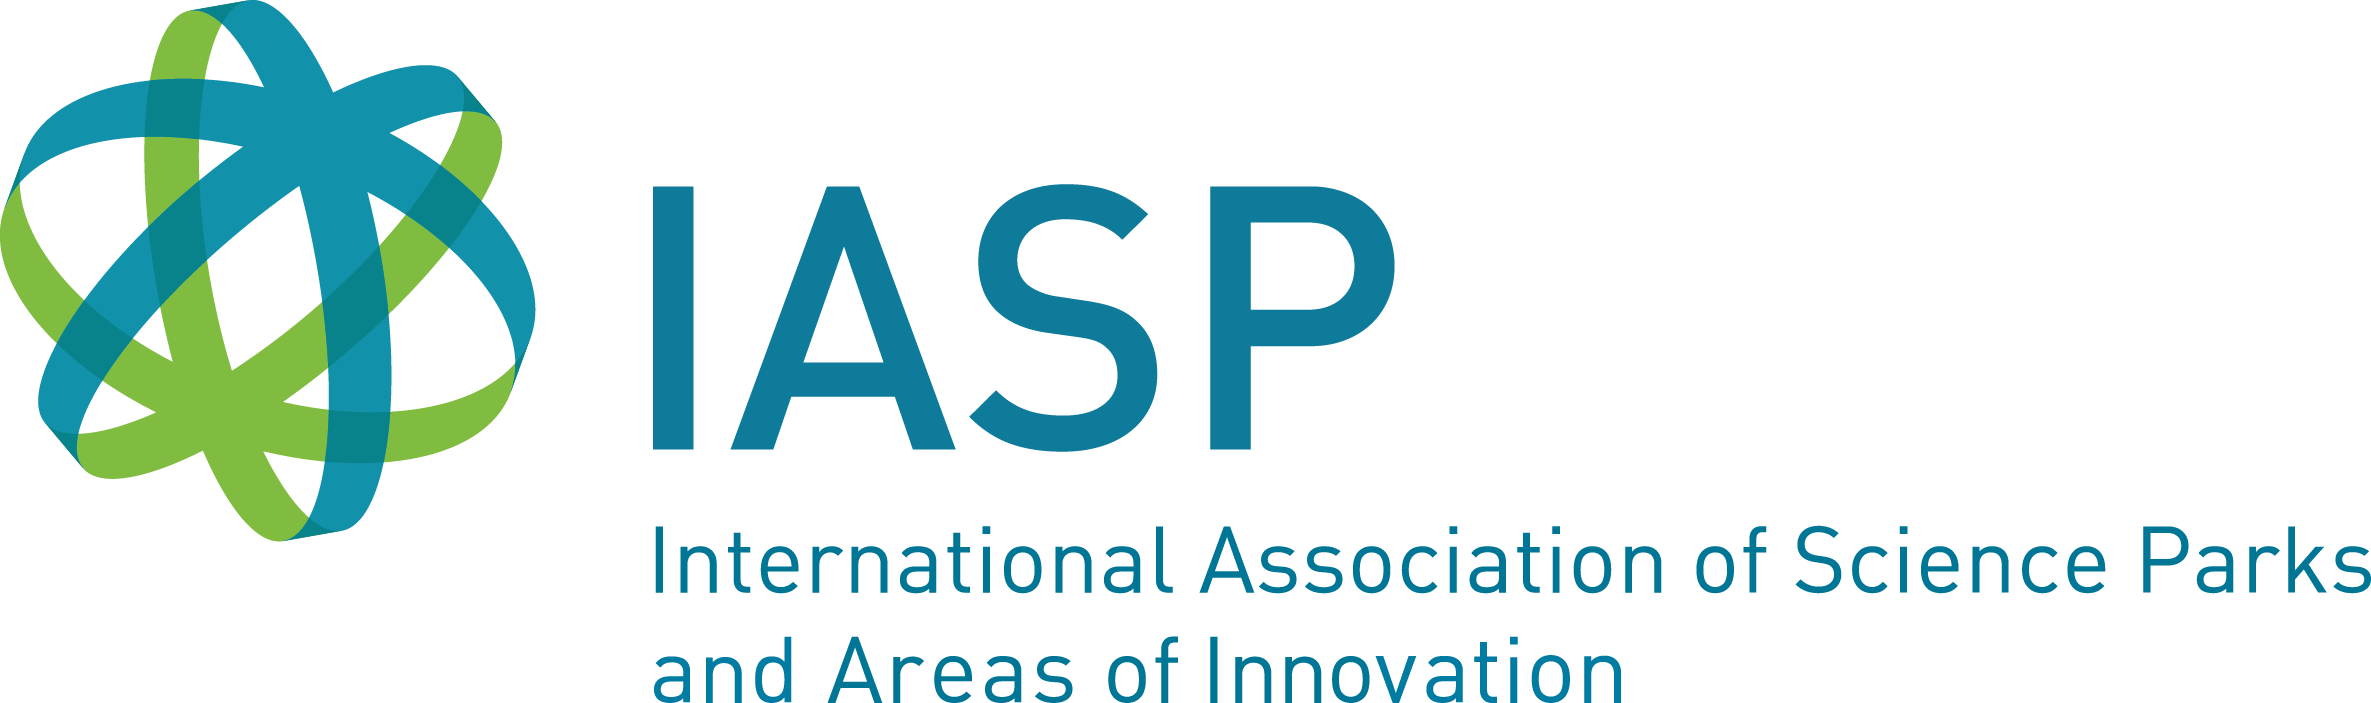 IASP logo.png